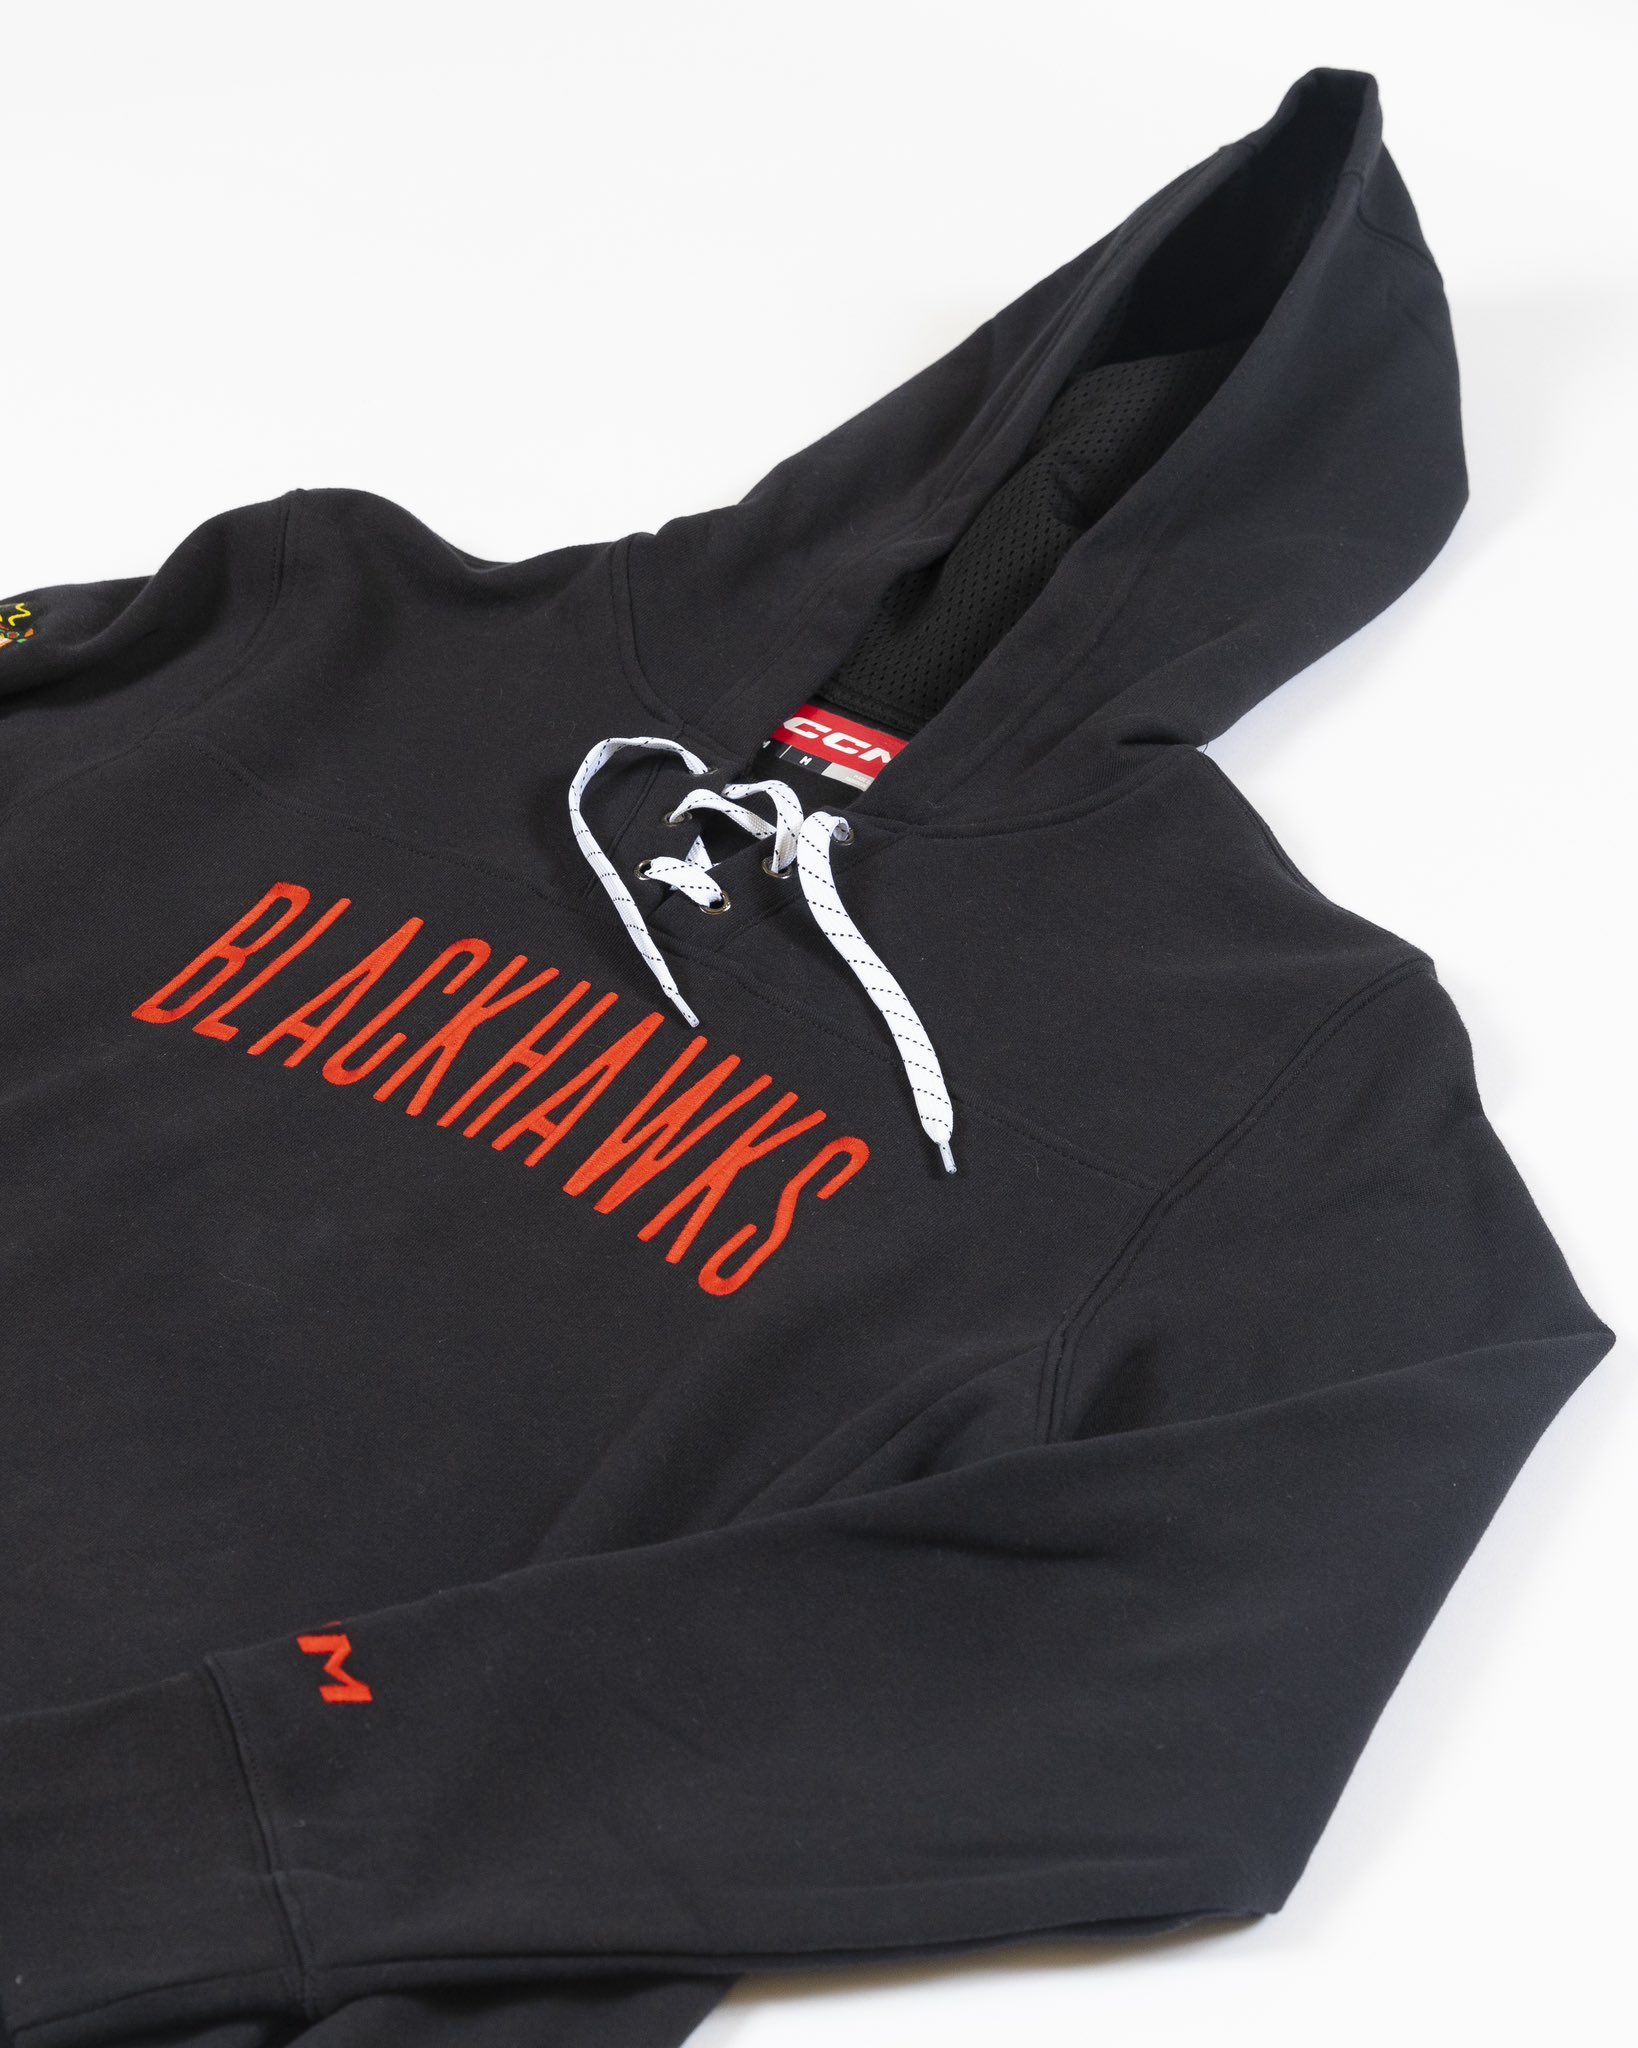 Blackhawks Store (@BlackhawksStore) / X